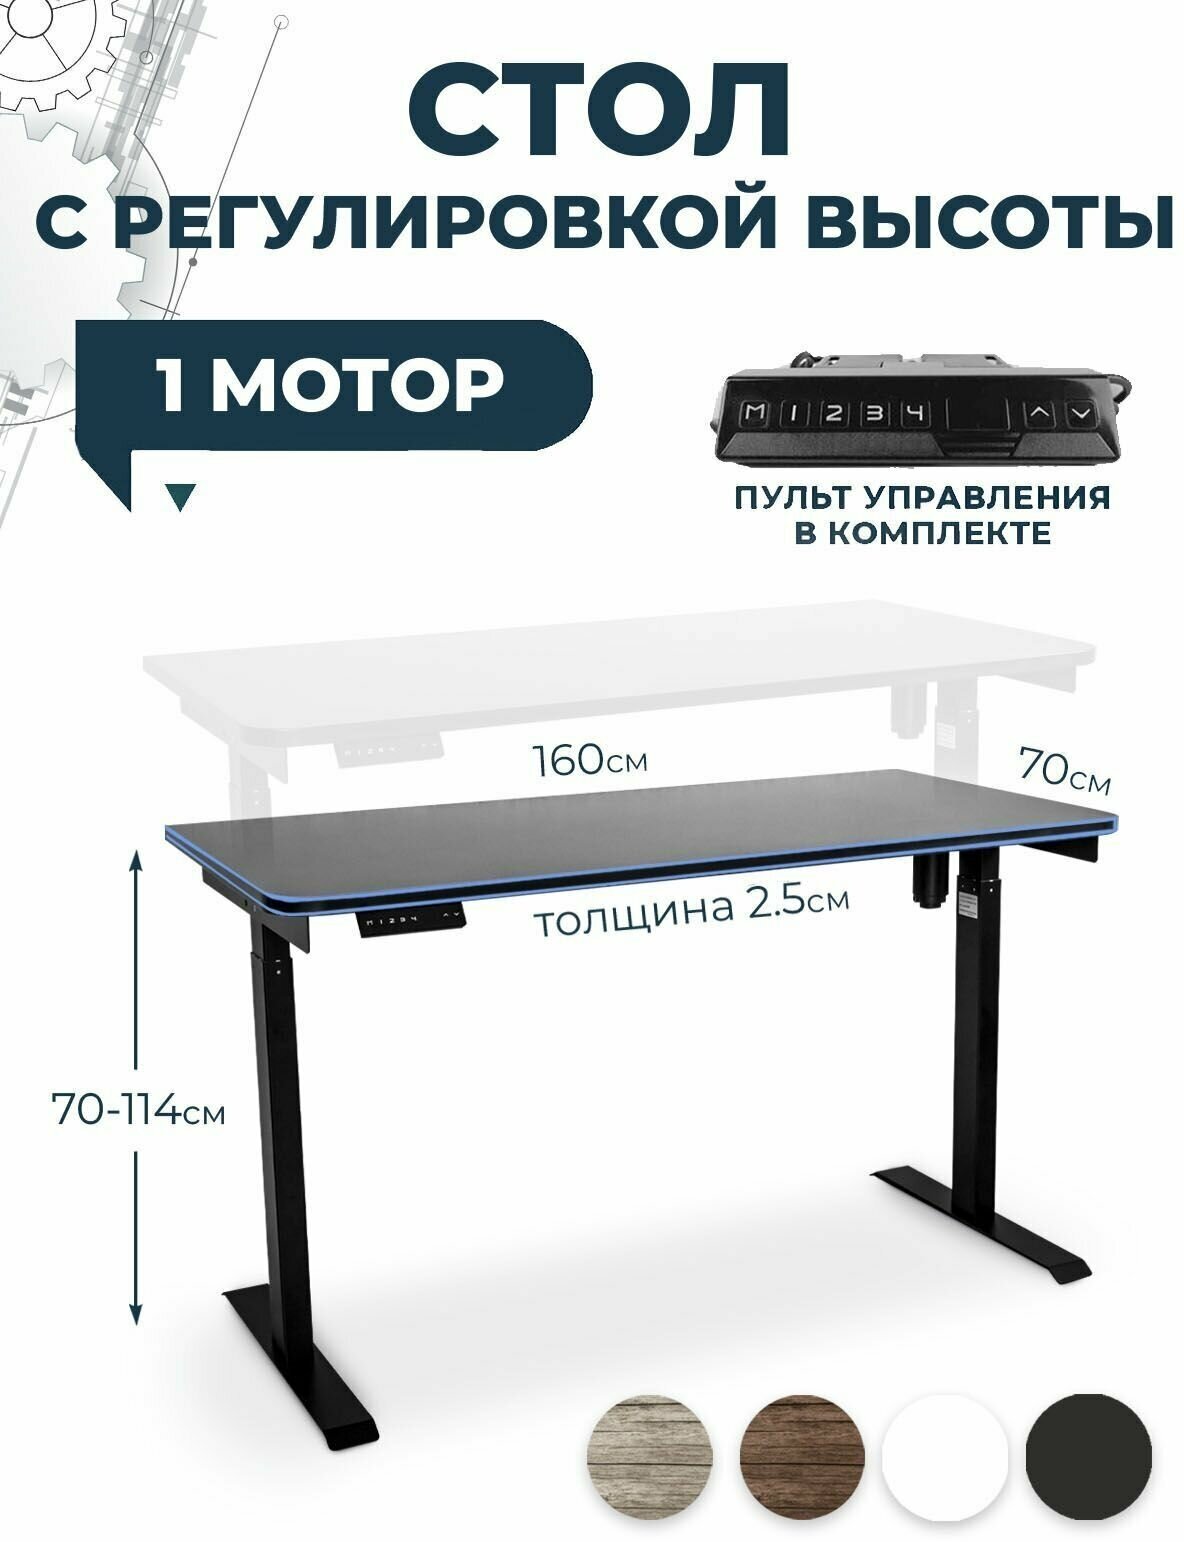 Геймерский игровой стол с электроприводом PROtect, черный, столешница ЛДСП 160x70x2,5 см, модель подстолья Е6